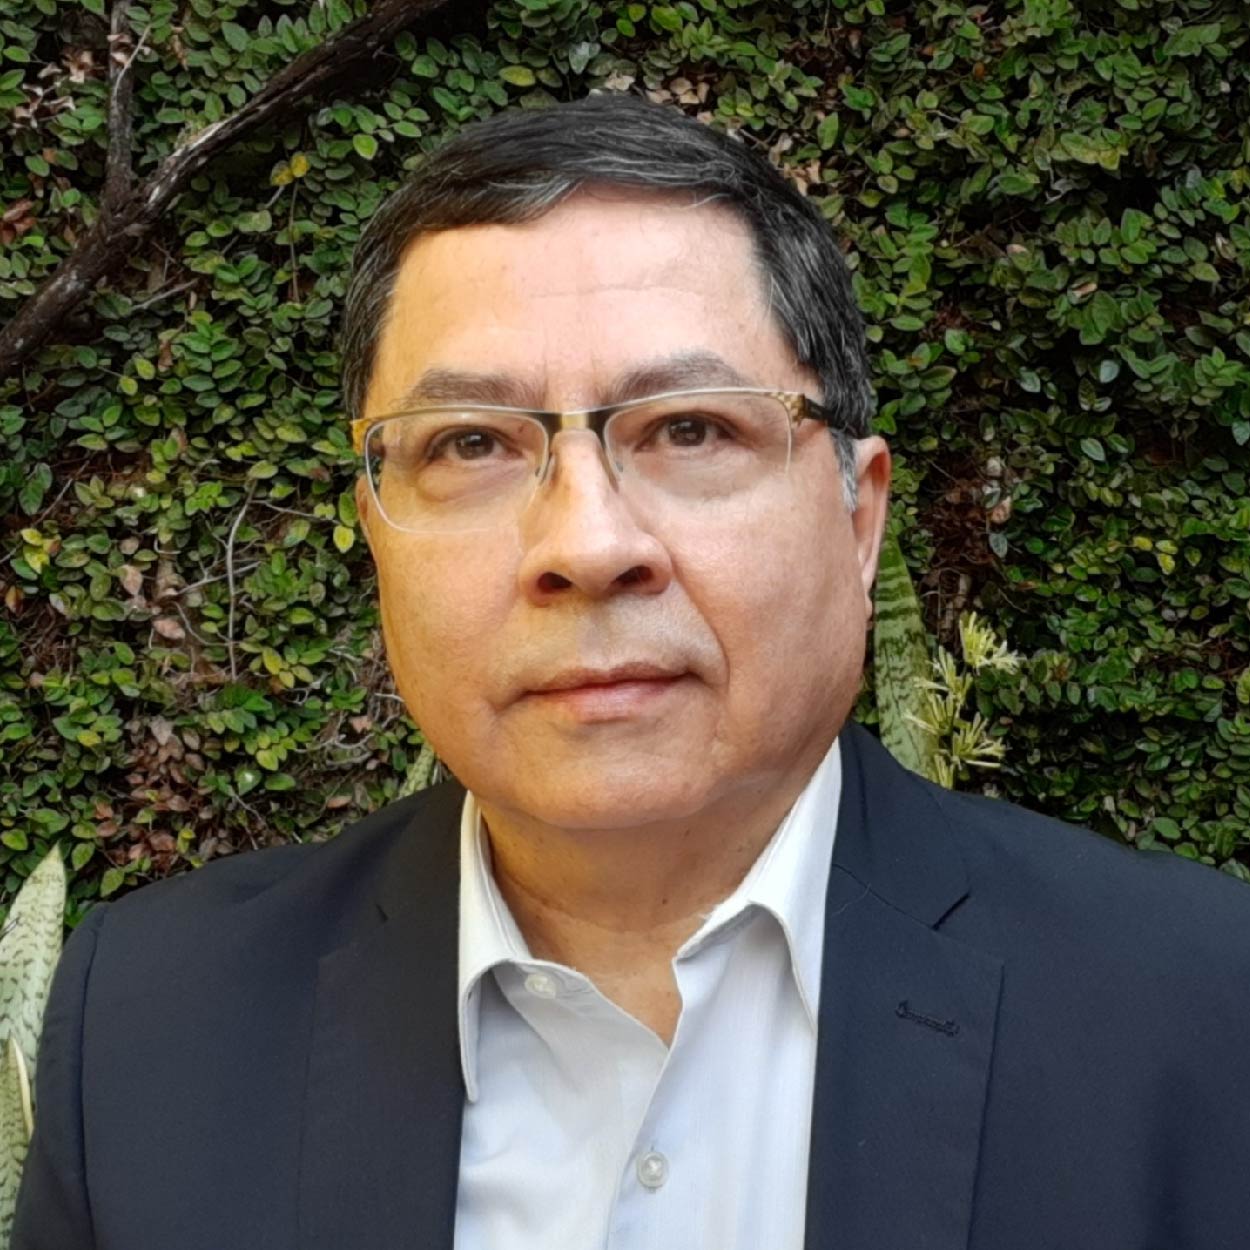 José Luis Guzmán